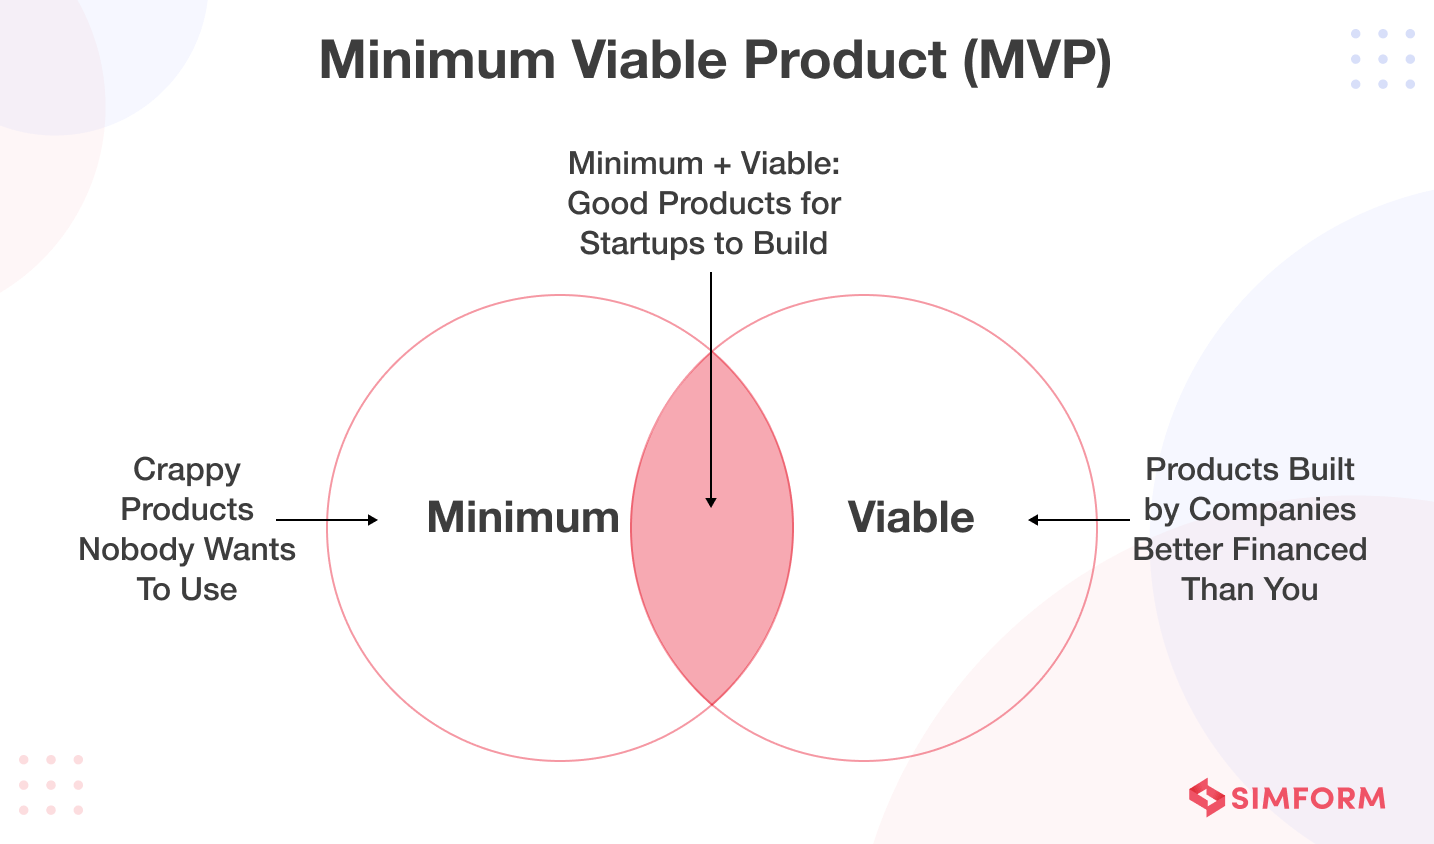 Minimum Viable Product